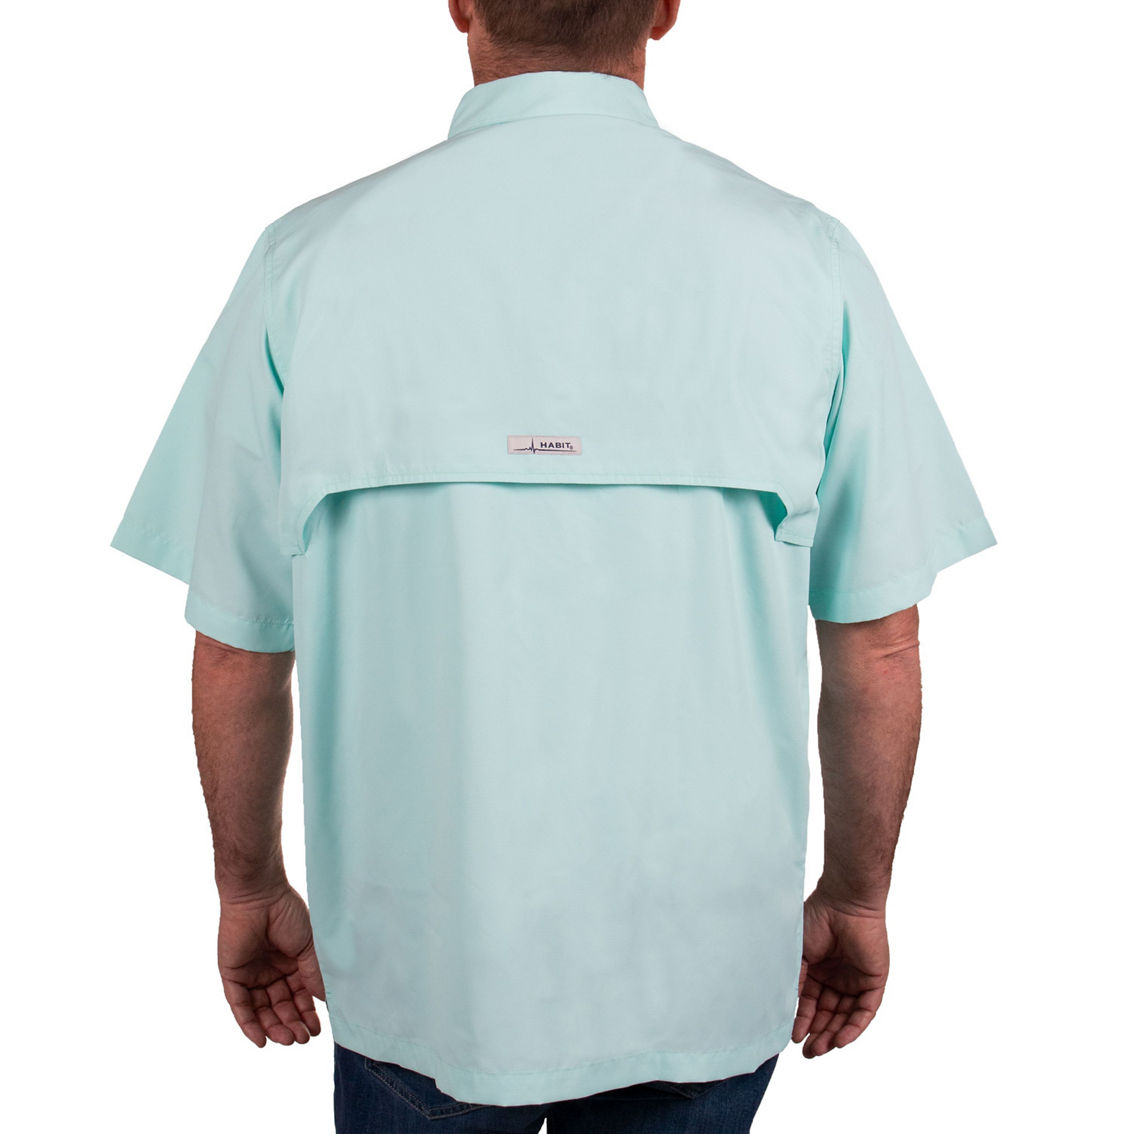 Habit Men's Fourche Mountain Short Sleeve River Guide Fishing Shirt, Shirts, Clothing & Accessories